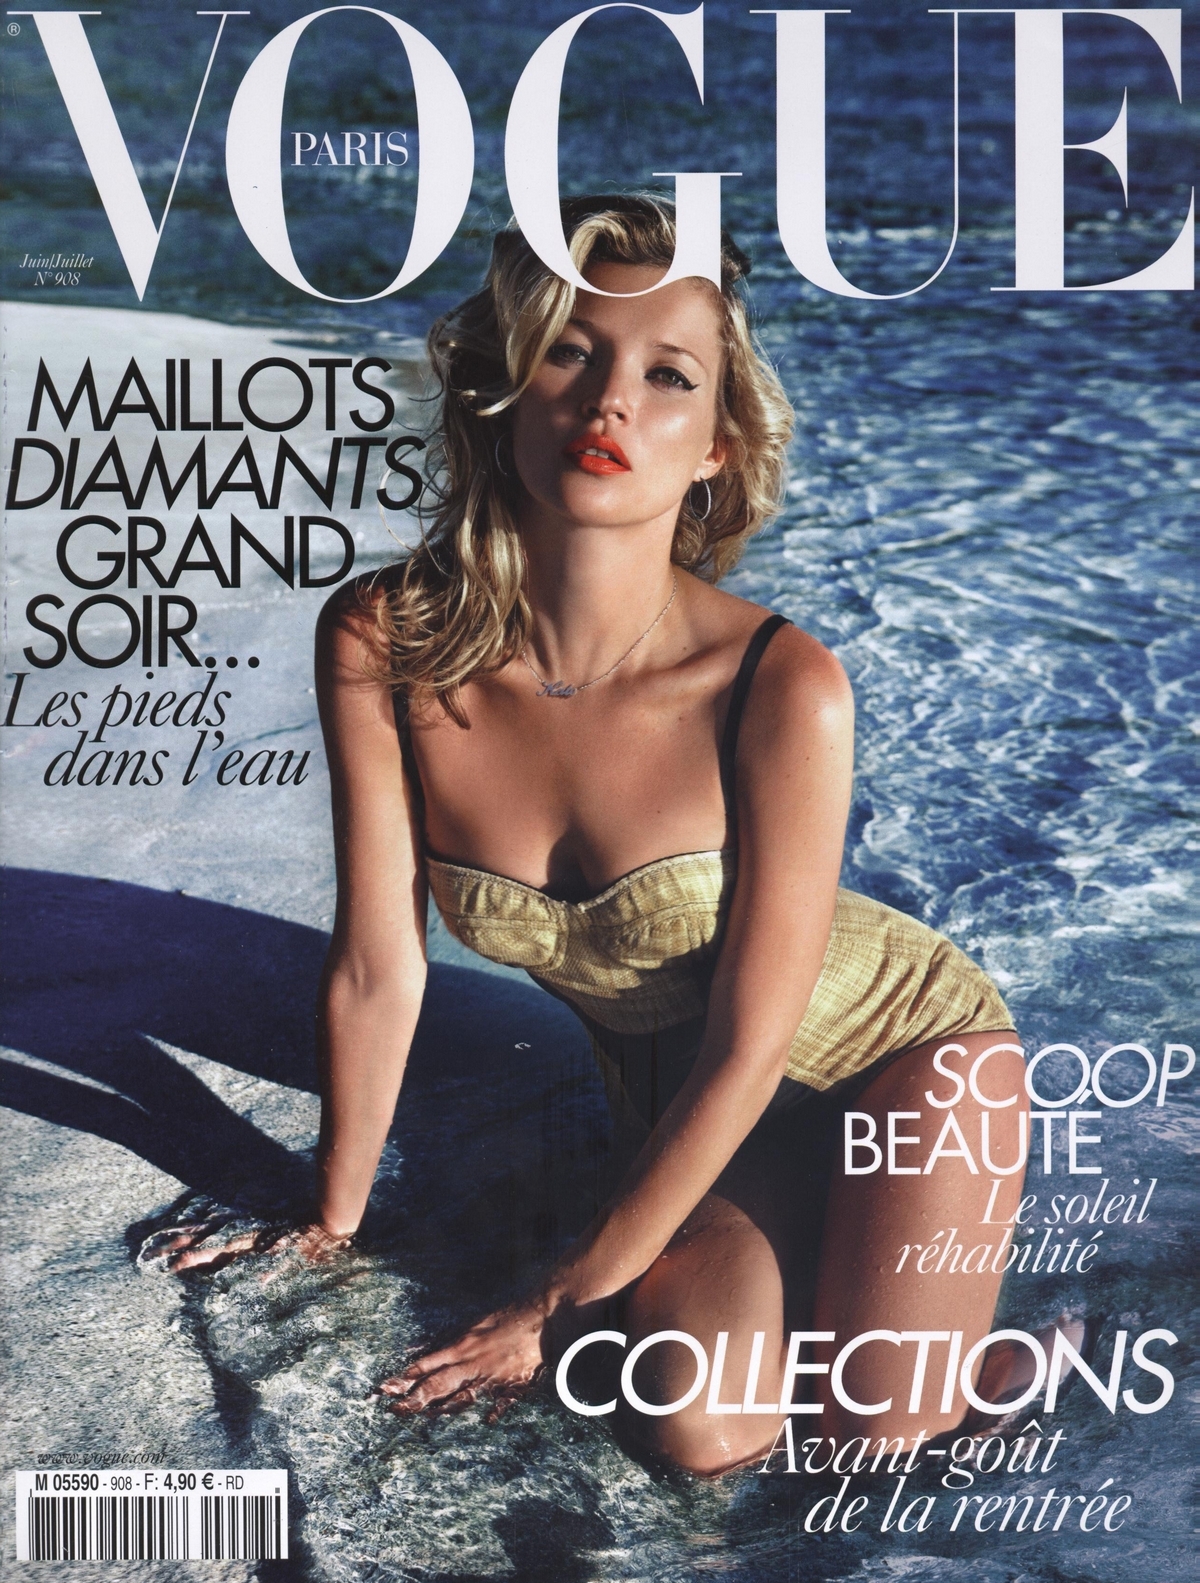 Кейт Мосс в журнале Vogue. Франция. Июнь 2010